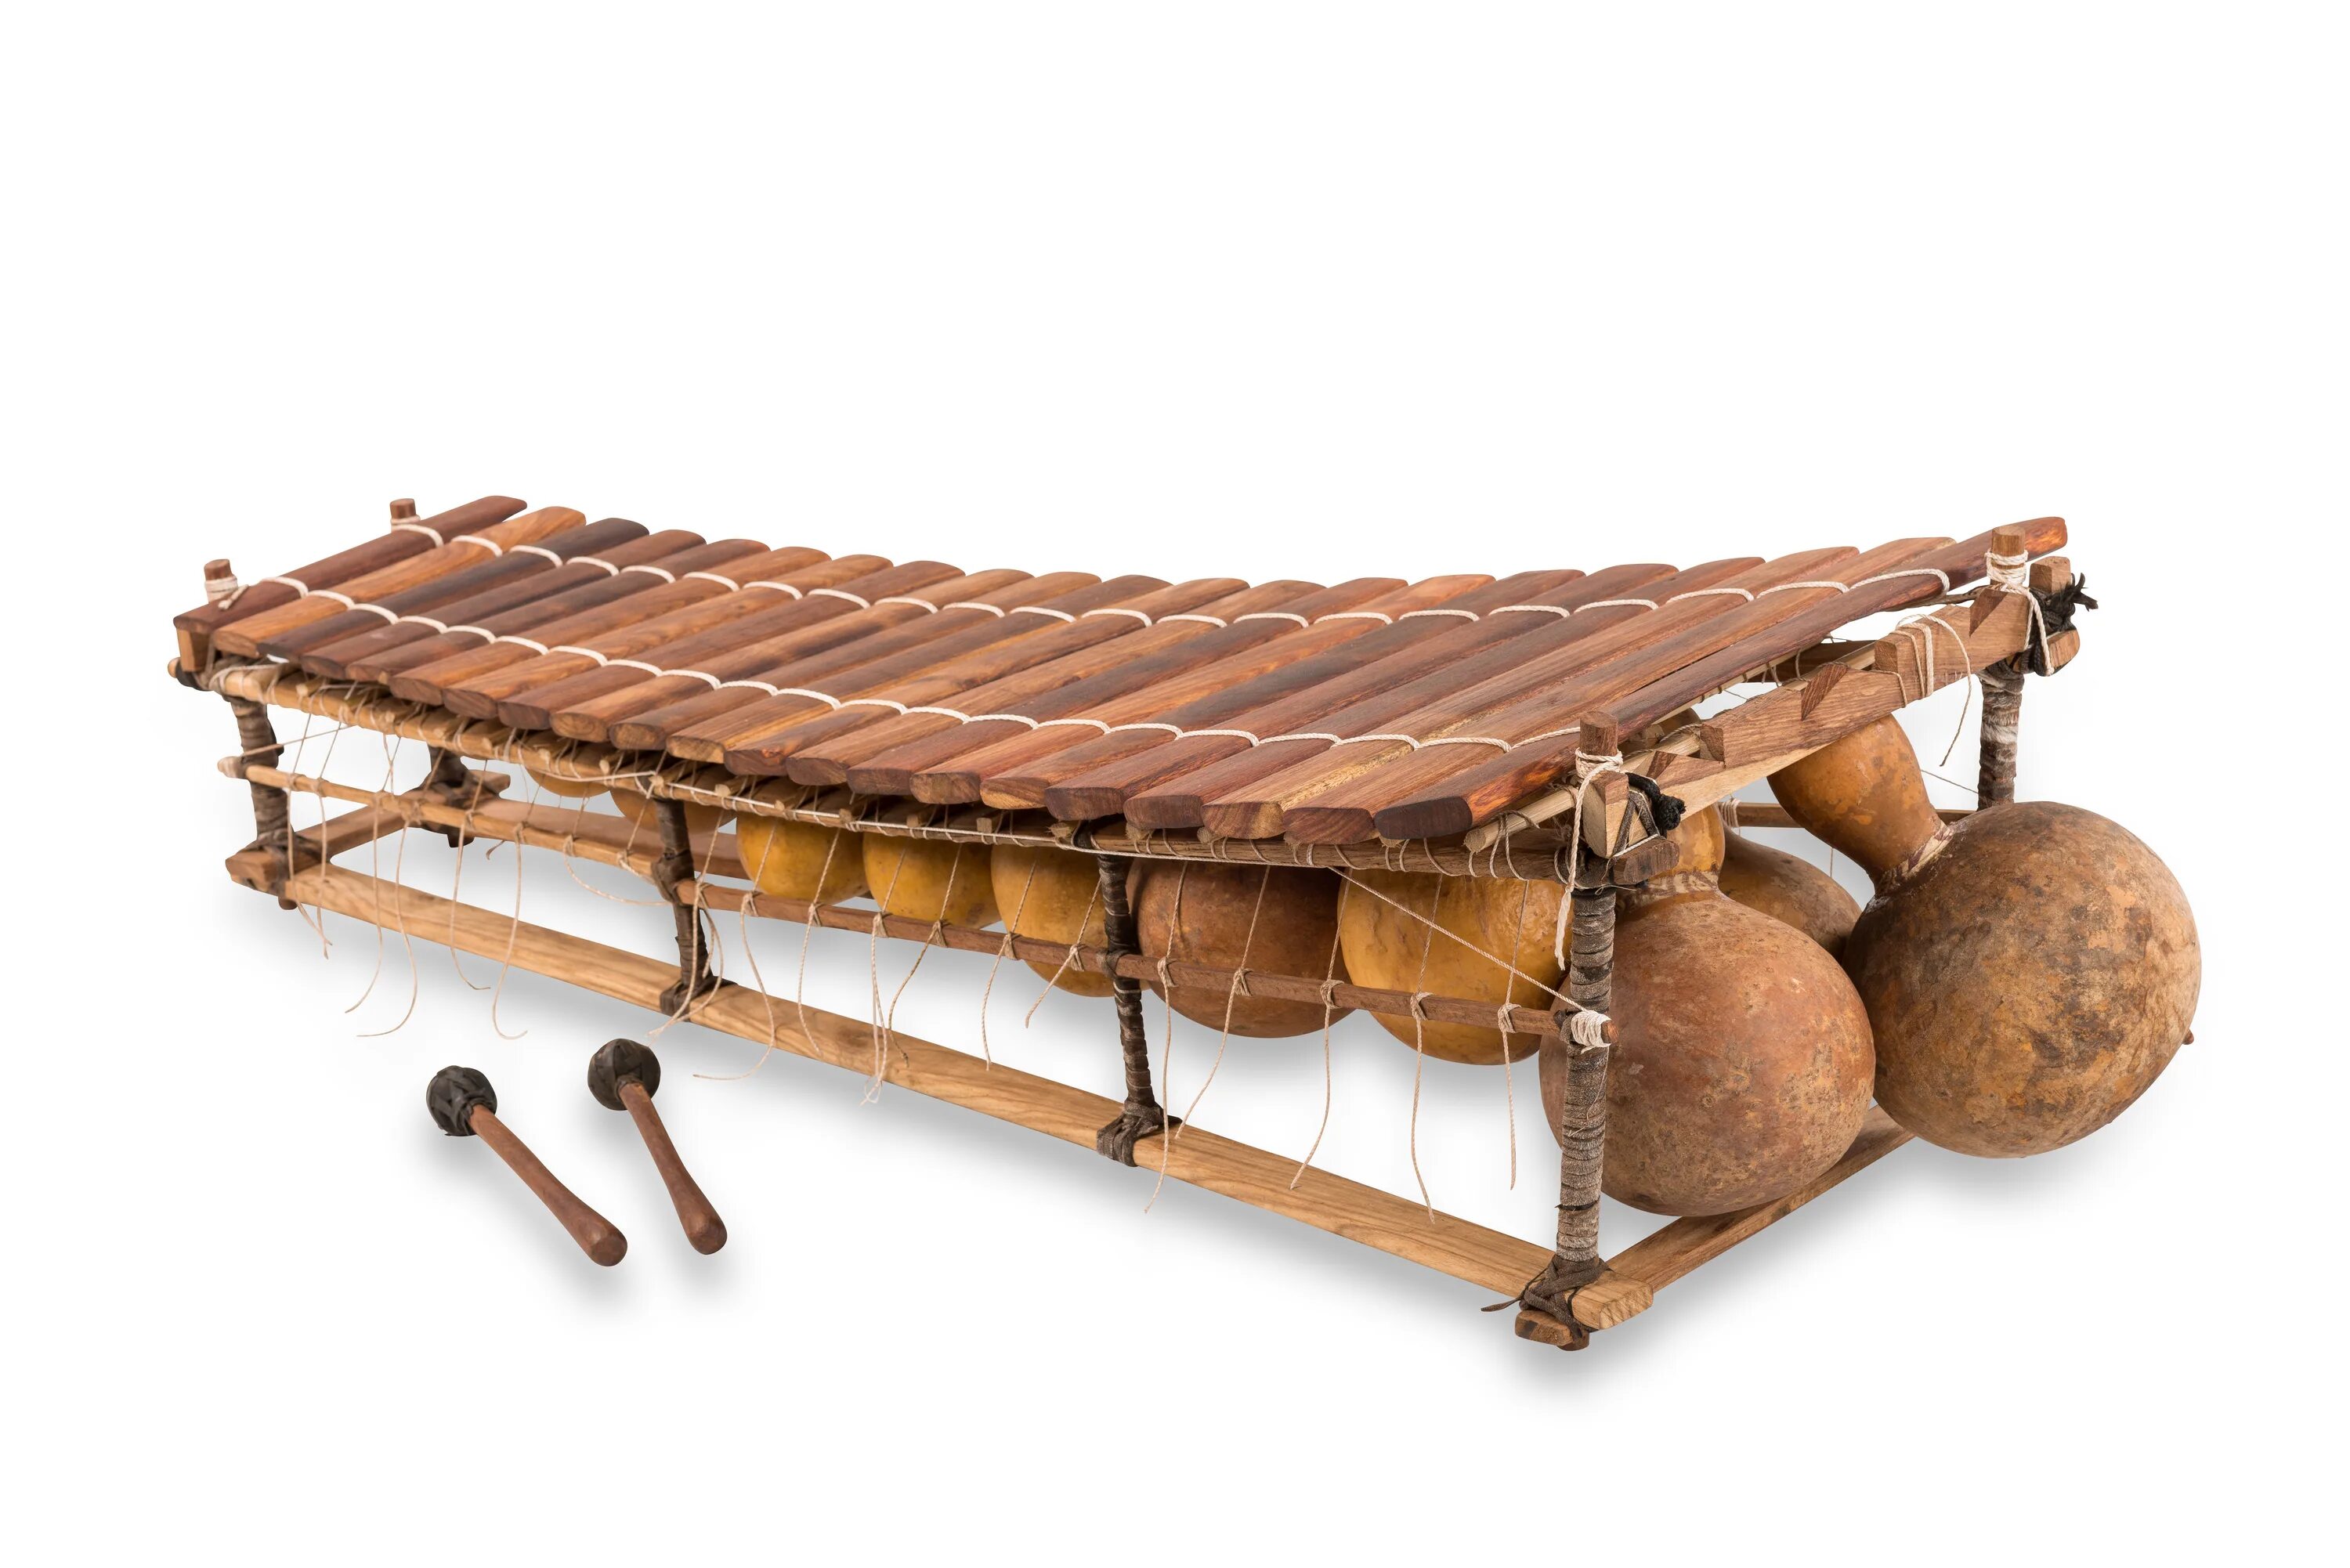 Дрова музыкальный инструмент. Балафон музыкальный инструмент. Африканский балафон. Музыкальные инструменты Африки балафон. Ксилофон ударный музыкальный инструмент идиофоны.